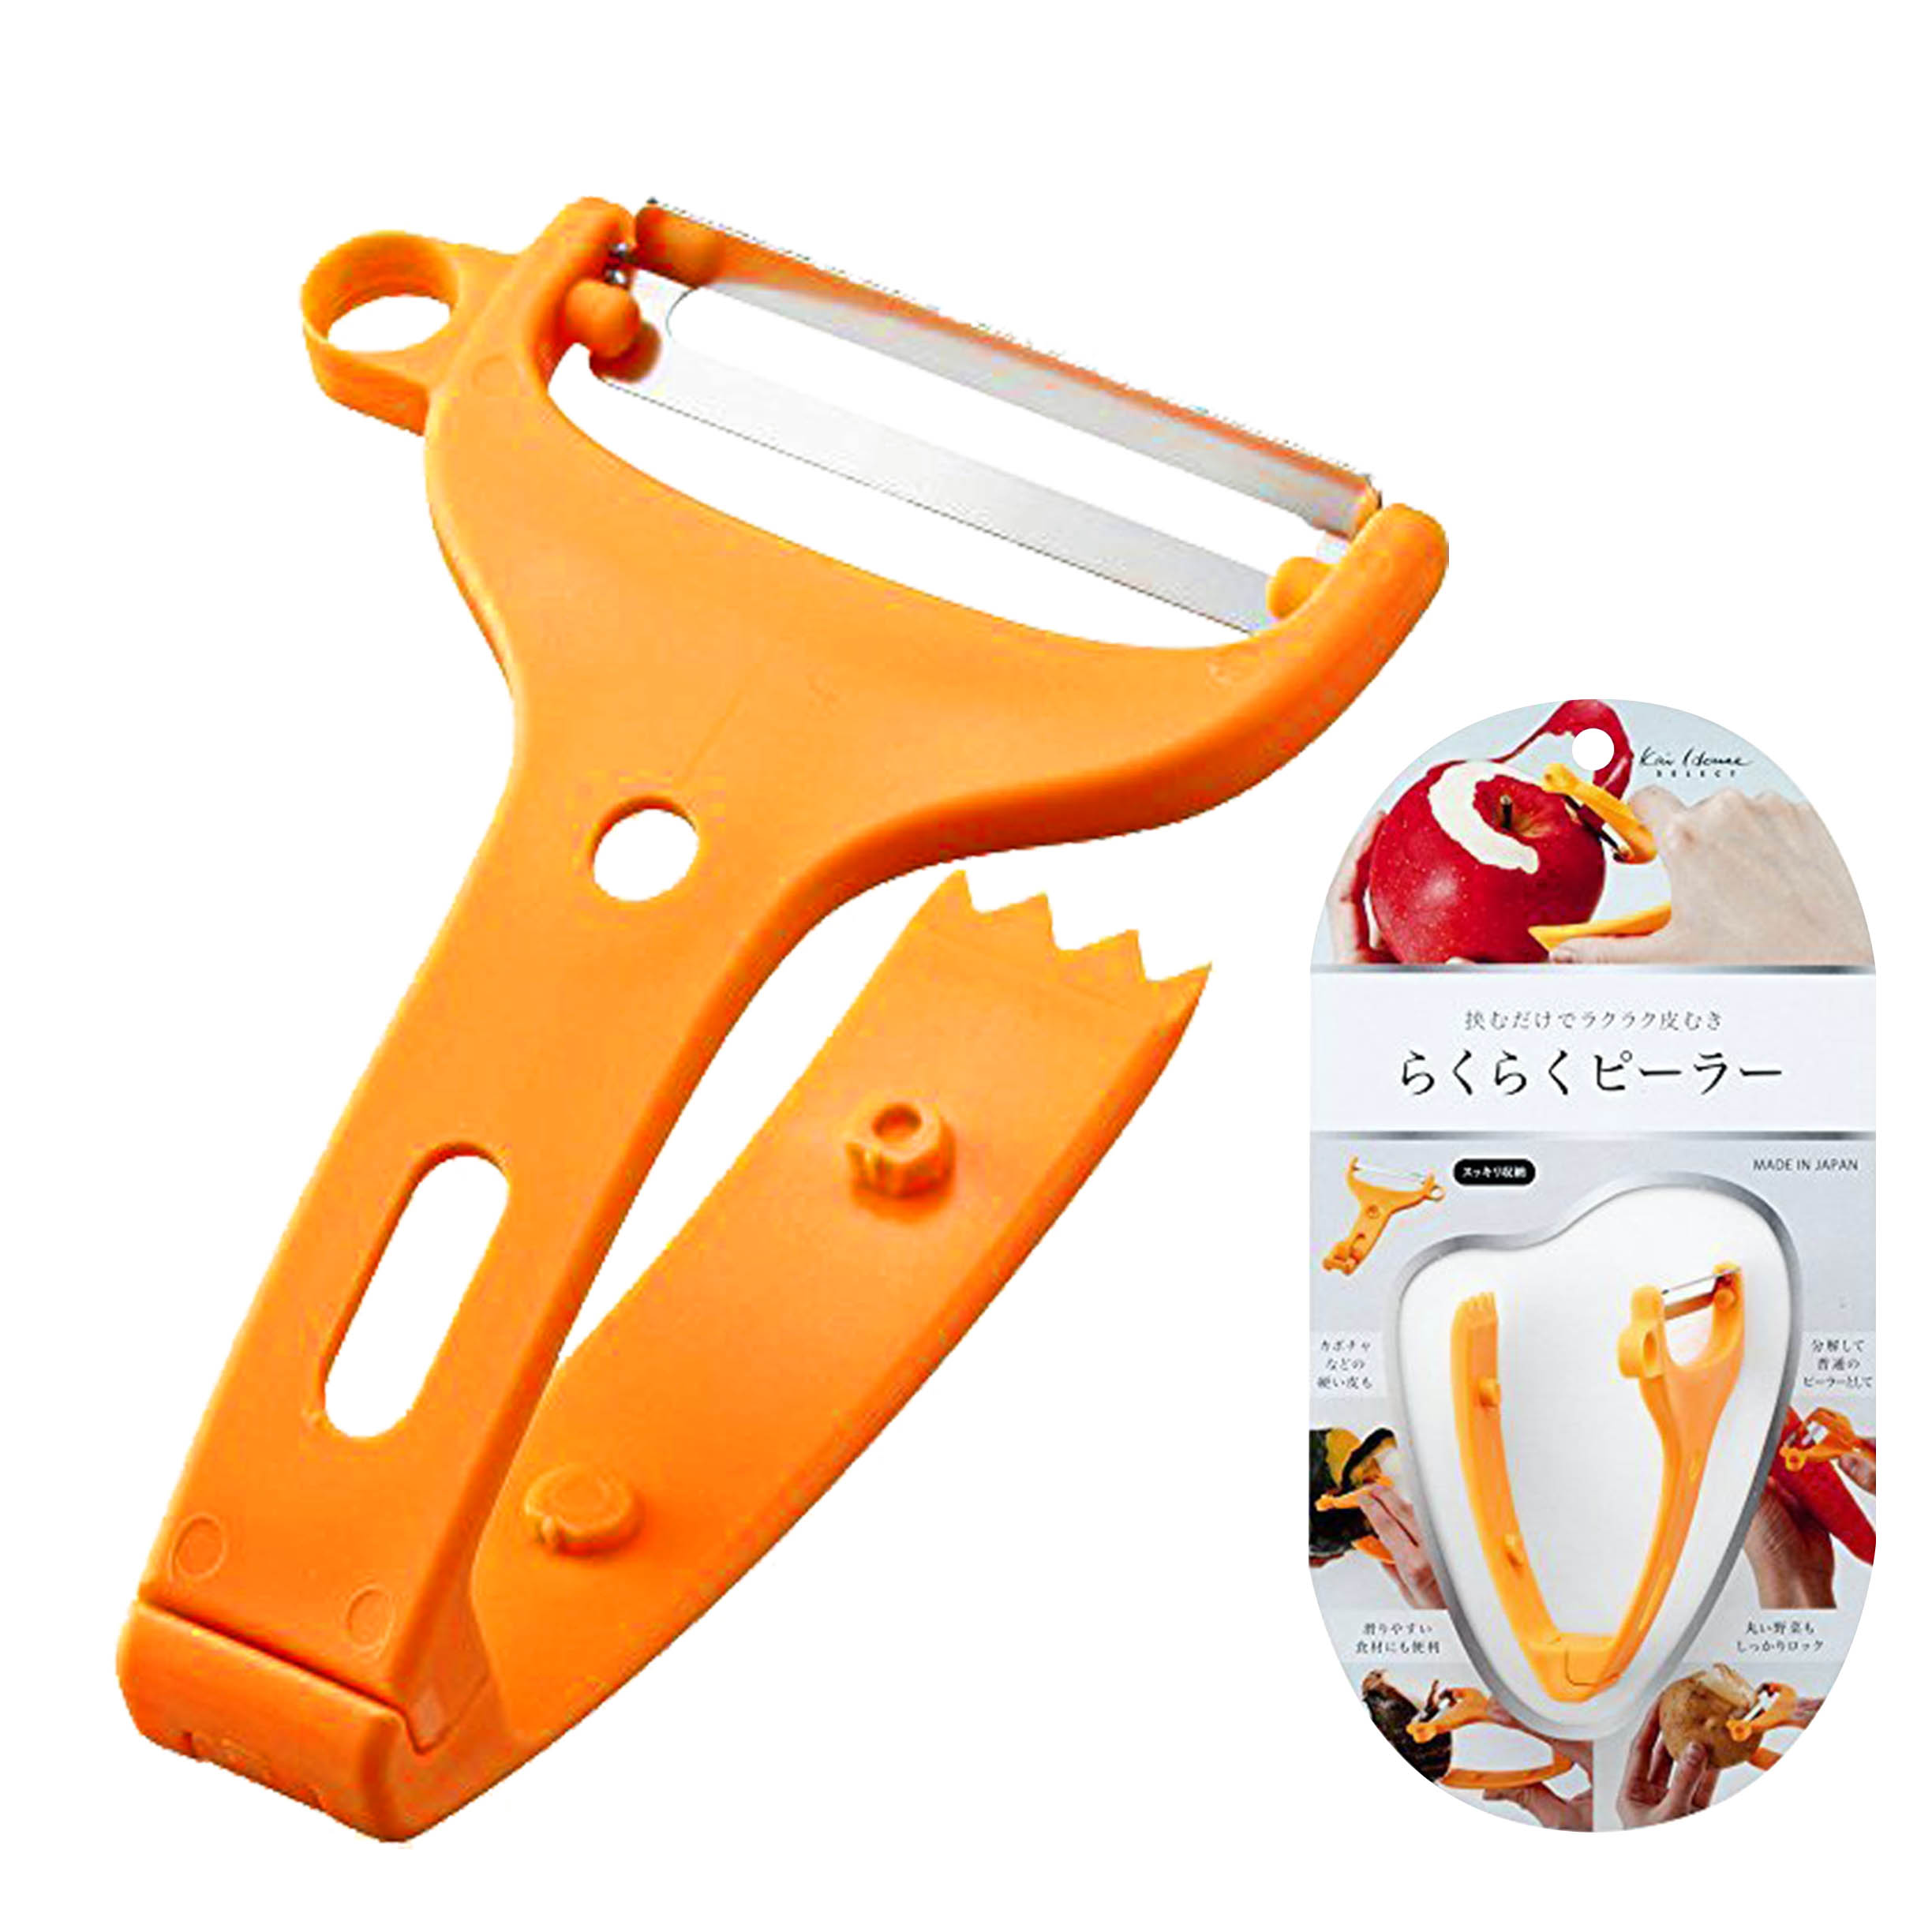 V型塑膠安全削皮器 刨刀 貝印 KAI Kai House Select 削皮刀 日本進口